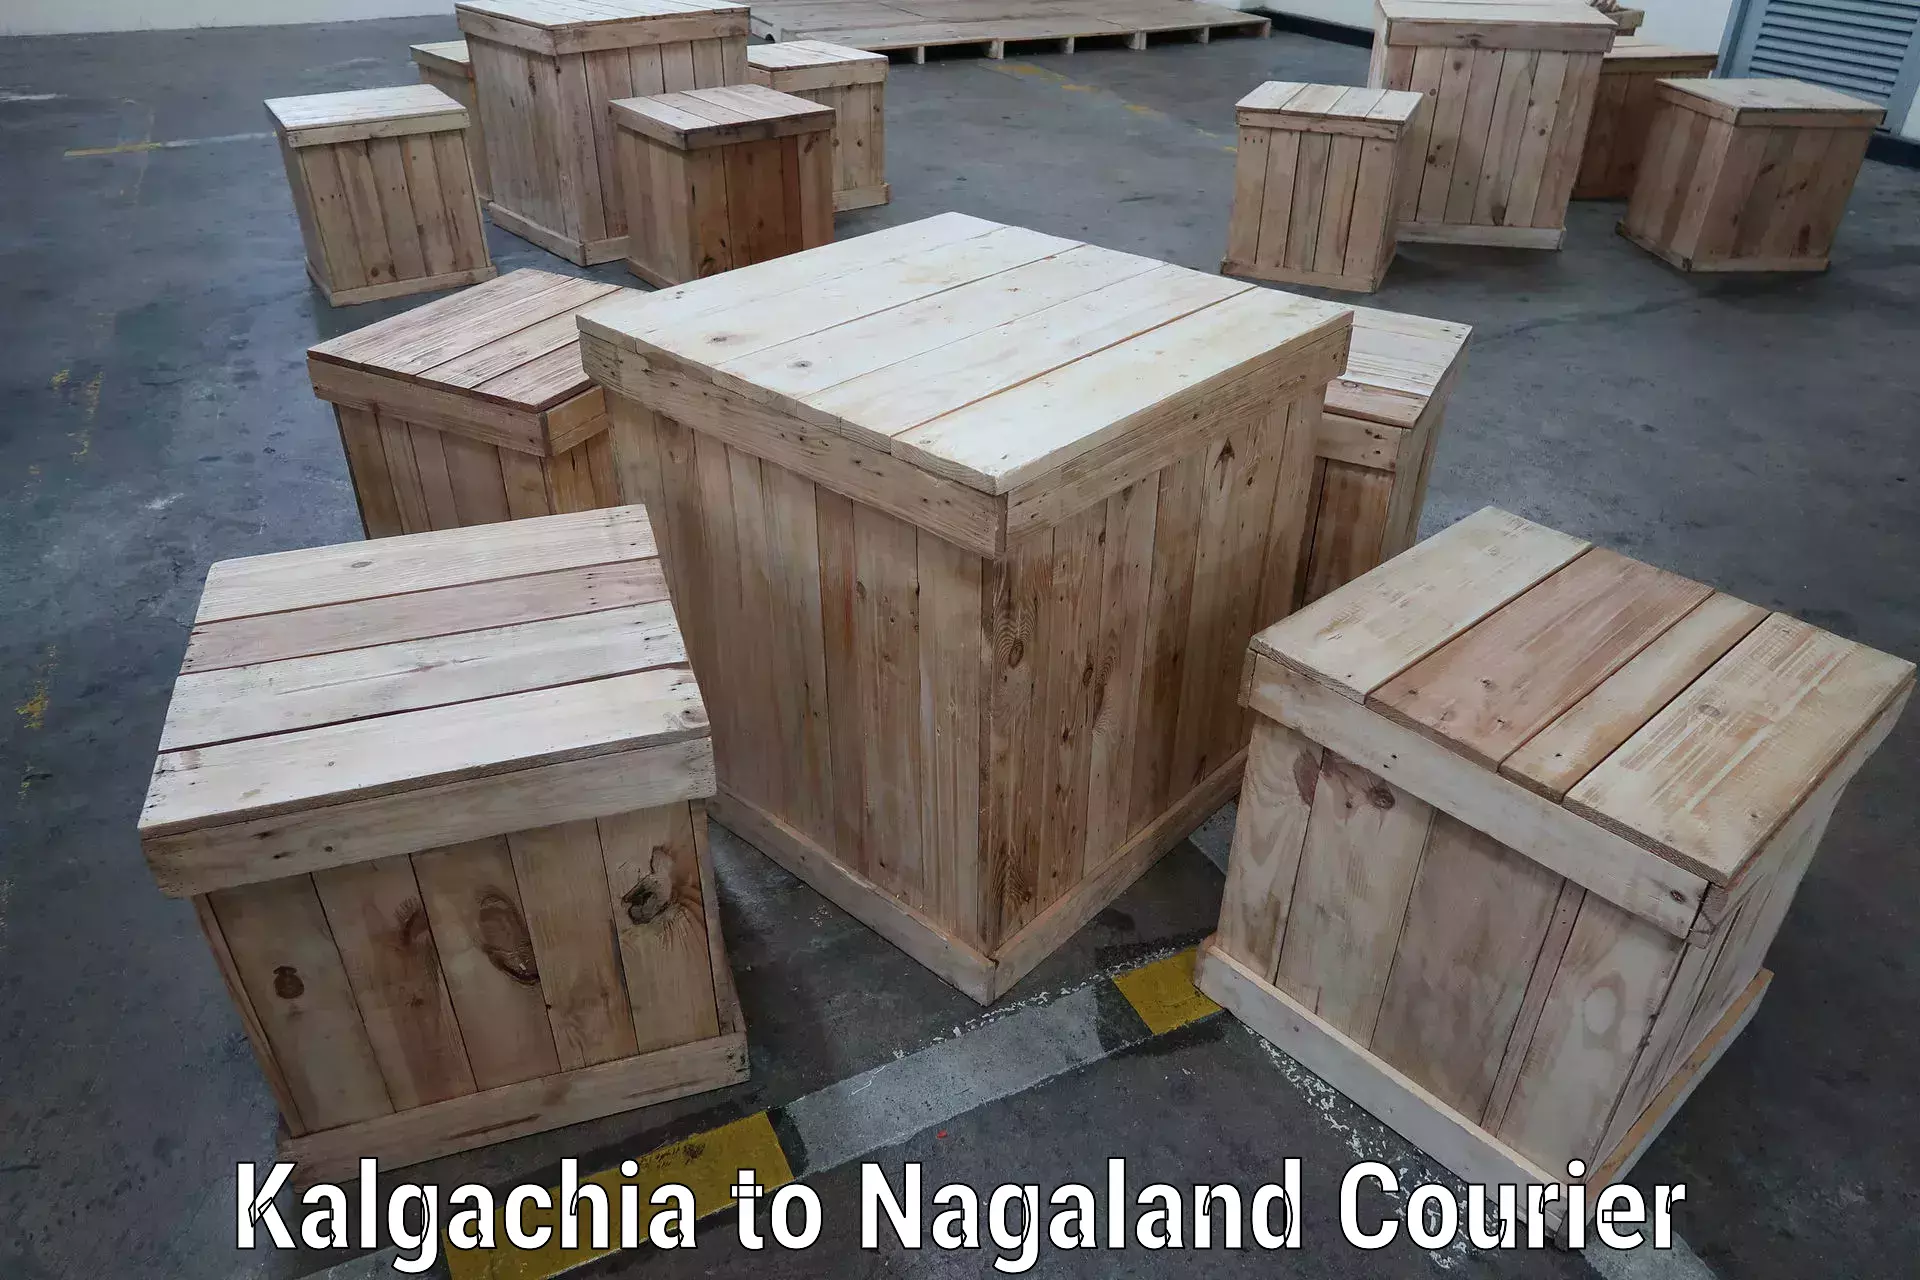 Express mail solutions Kalgachia to Nagaland